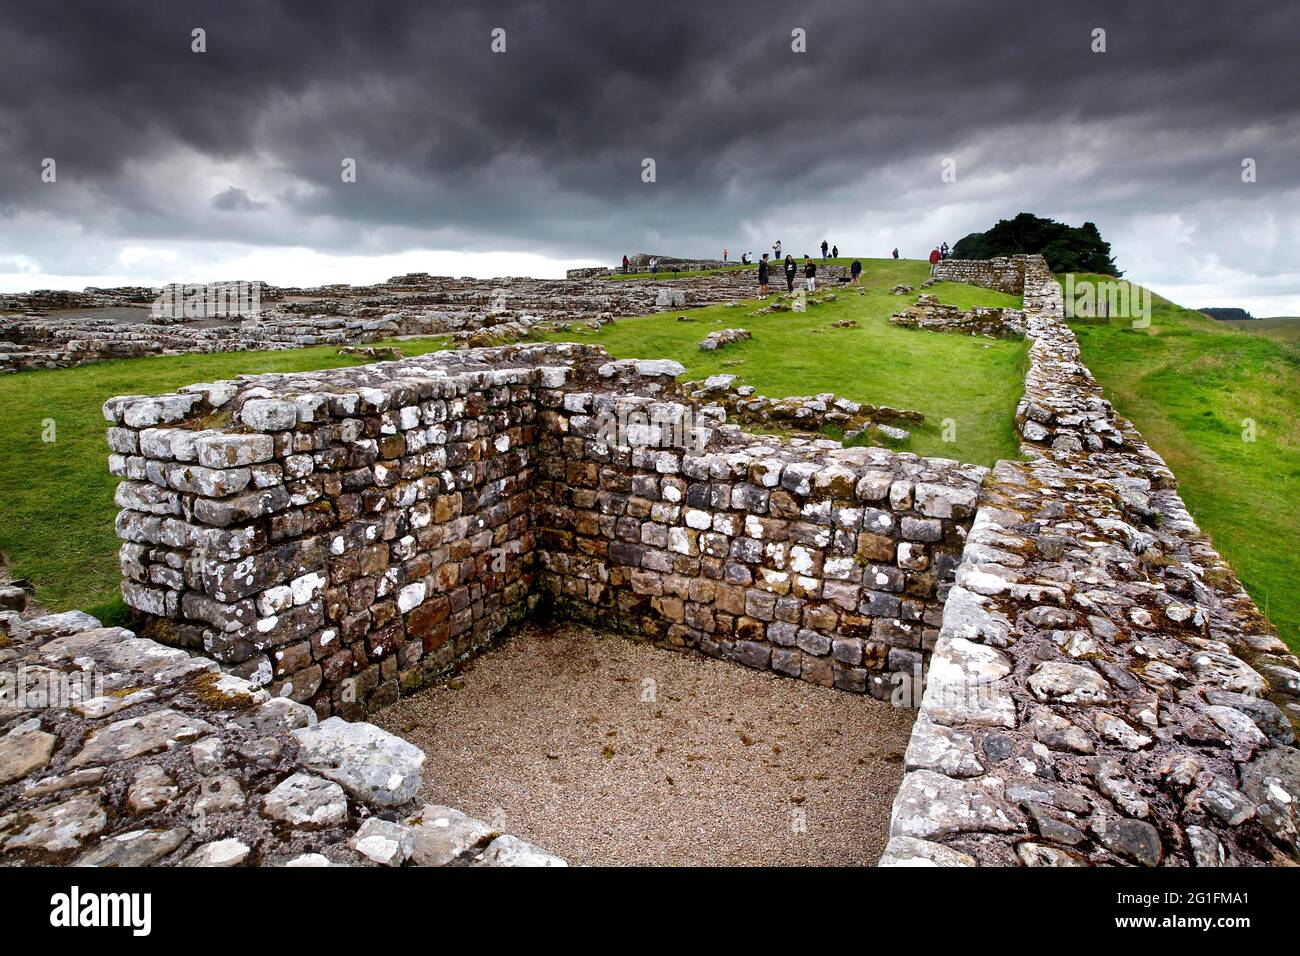 Il Muro di Adriano, il Muro di Adriano, il sistema di fortificazione di frontiera romana, le lime Britanniche, la catena di fortificazione, il forte, la rovina, forte, Casa, Parrocchia Foto Stock